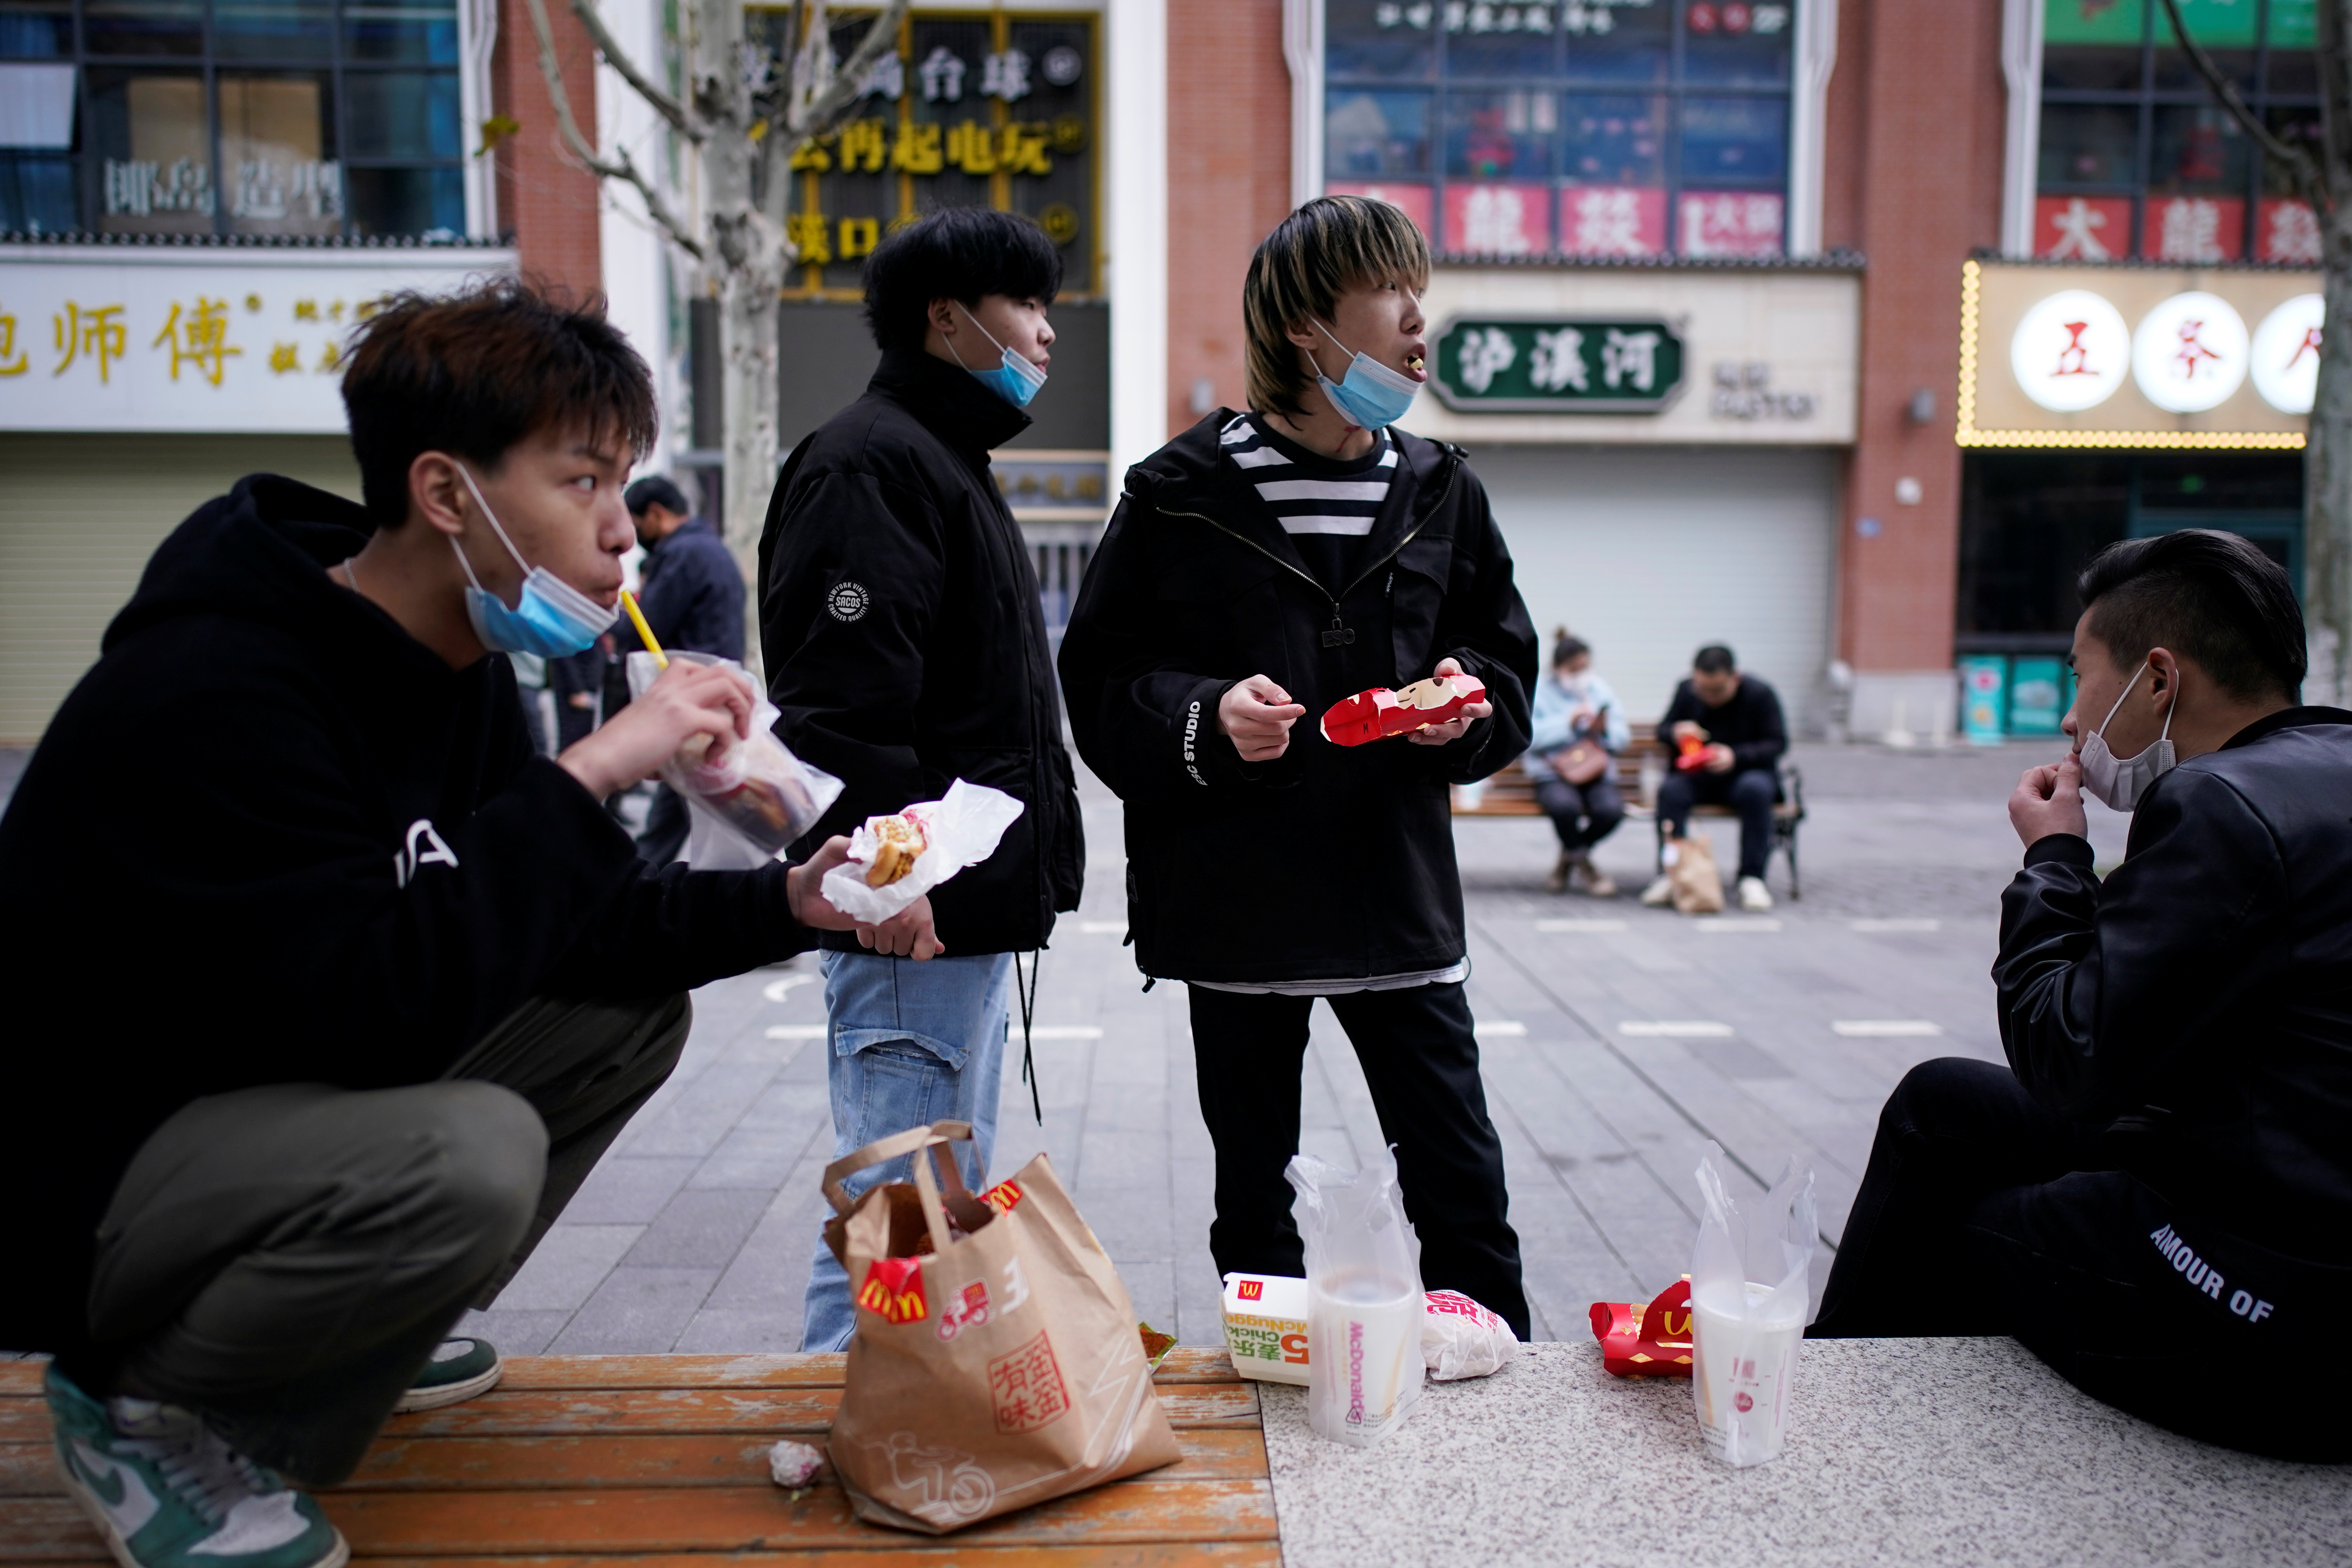 Ciudad china de Shenzhen prohíbe comer perros y gatos tras crisis del coronavirus